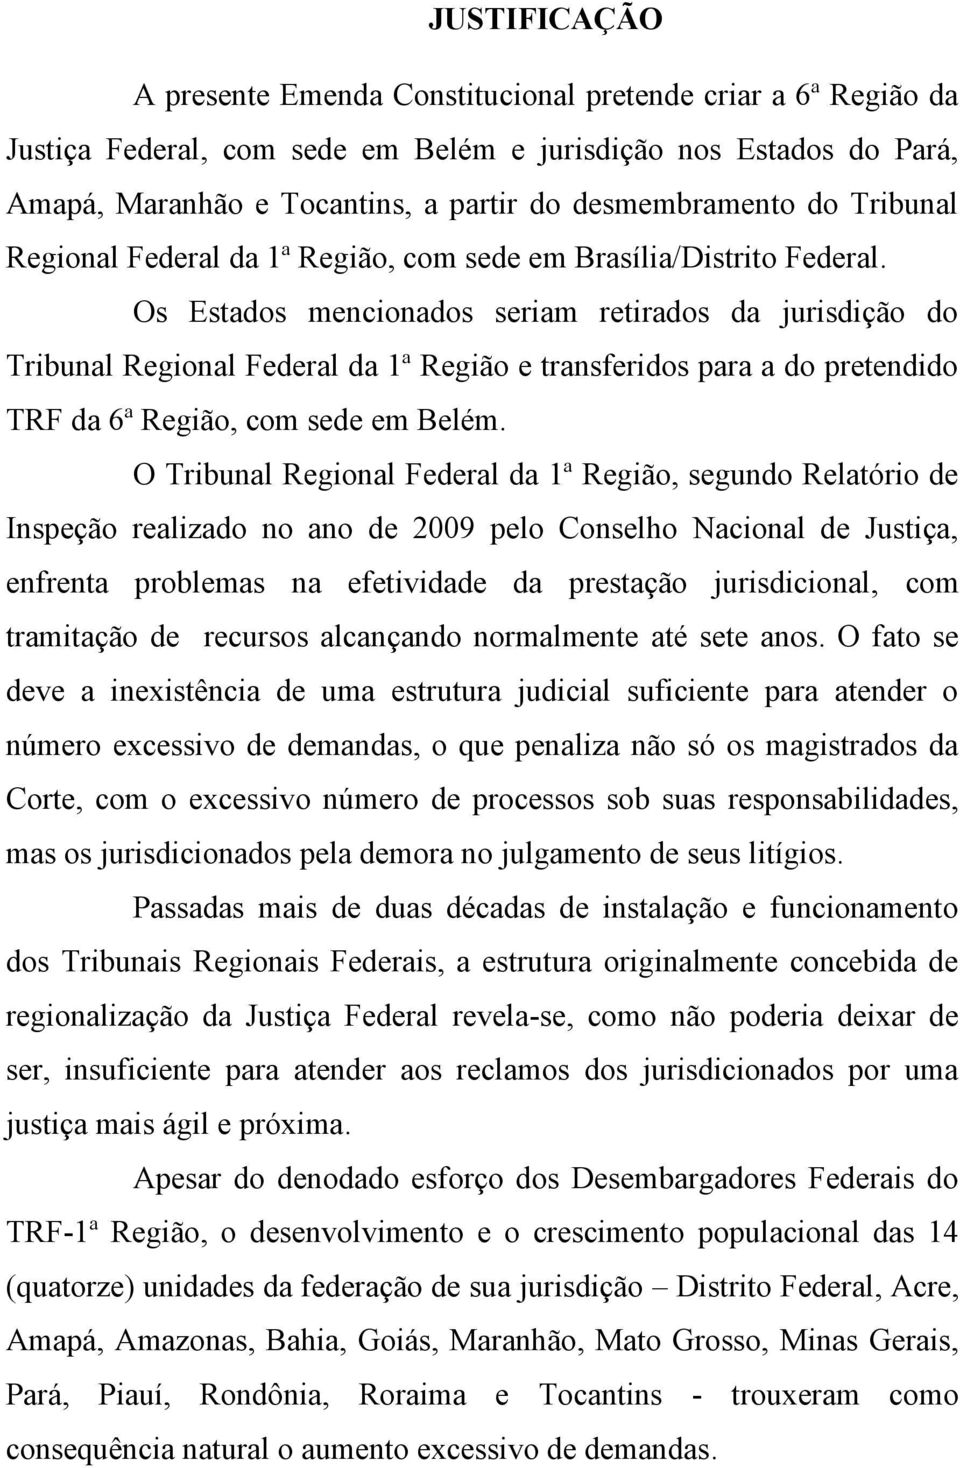 Os Estados mencionados seriam retirados da jurisdição do Tribunal Regional Federal da 1ª Região e transferidos para a do pretendido TRF da 6ª Região, com sede em Belém.